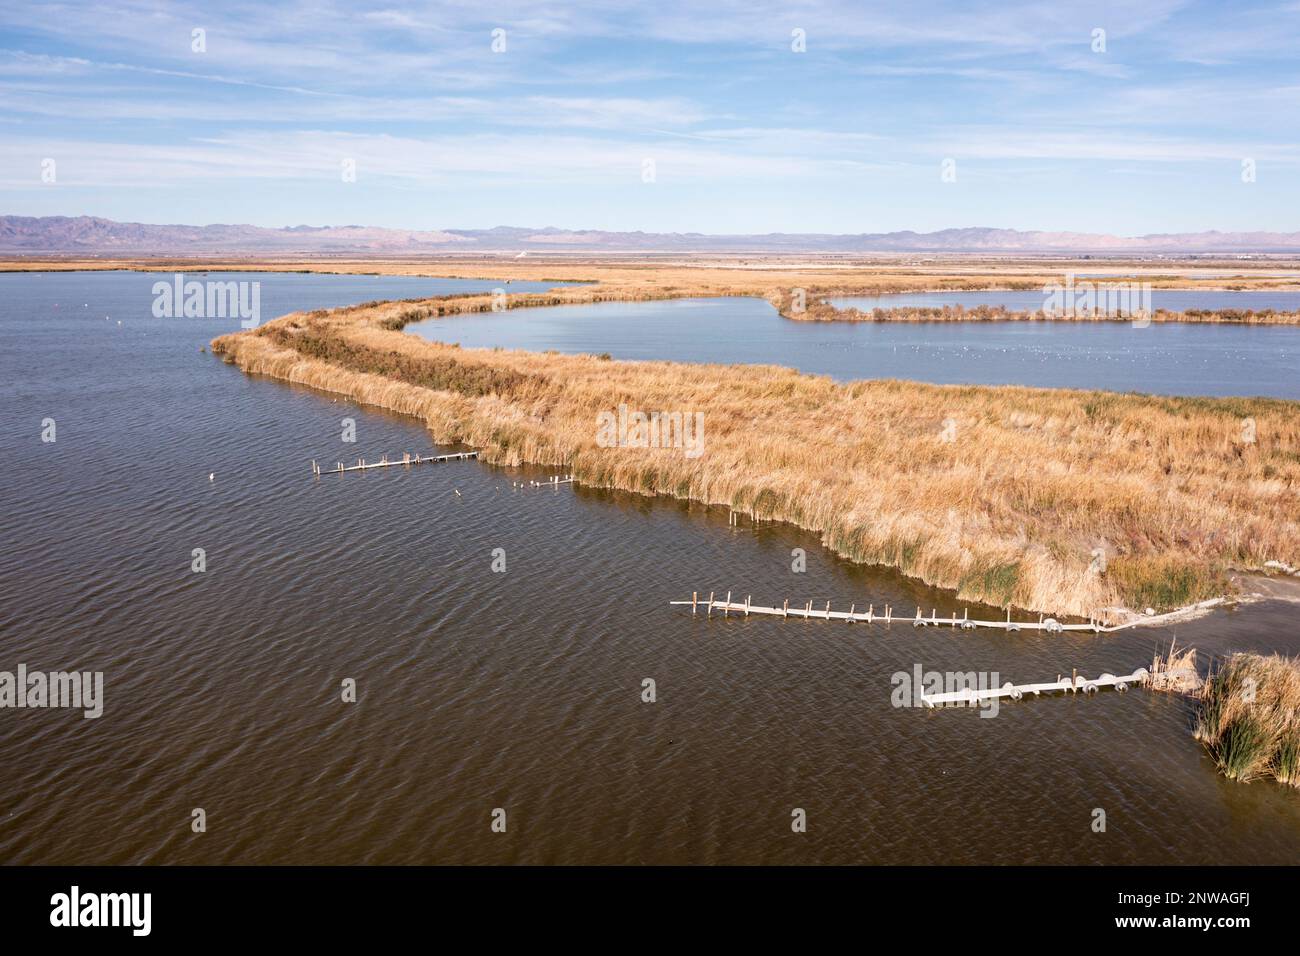 Les zones humides nouvellement créées tentent d'atténuer la crise environnementale qui se produit dans la mer de Salton, un lac en diminution rapide dans le désert de Californie. Banque D'Images